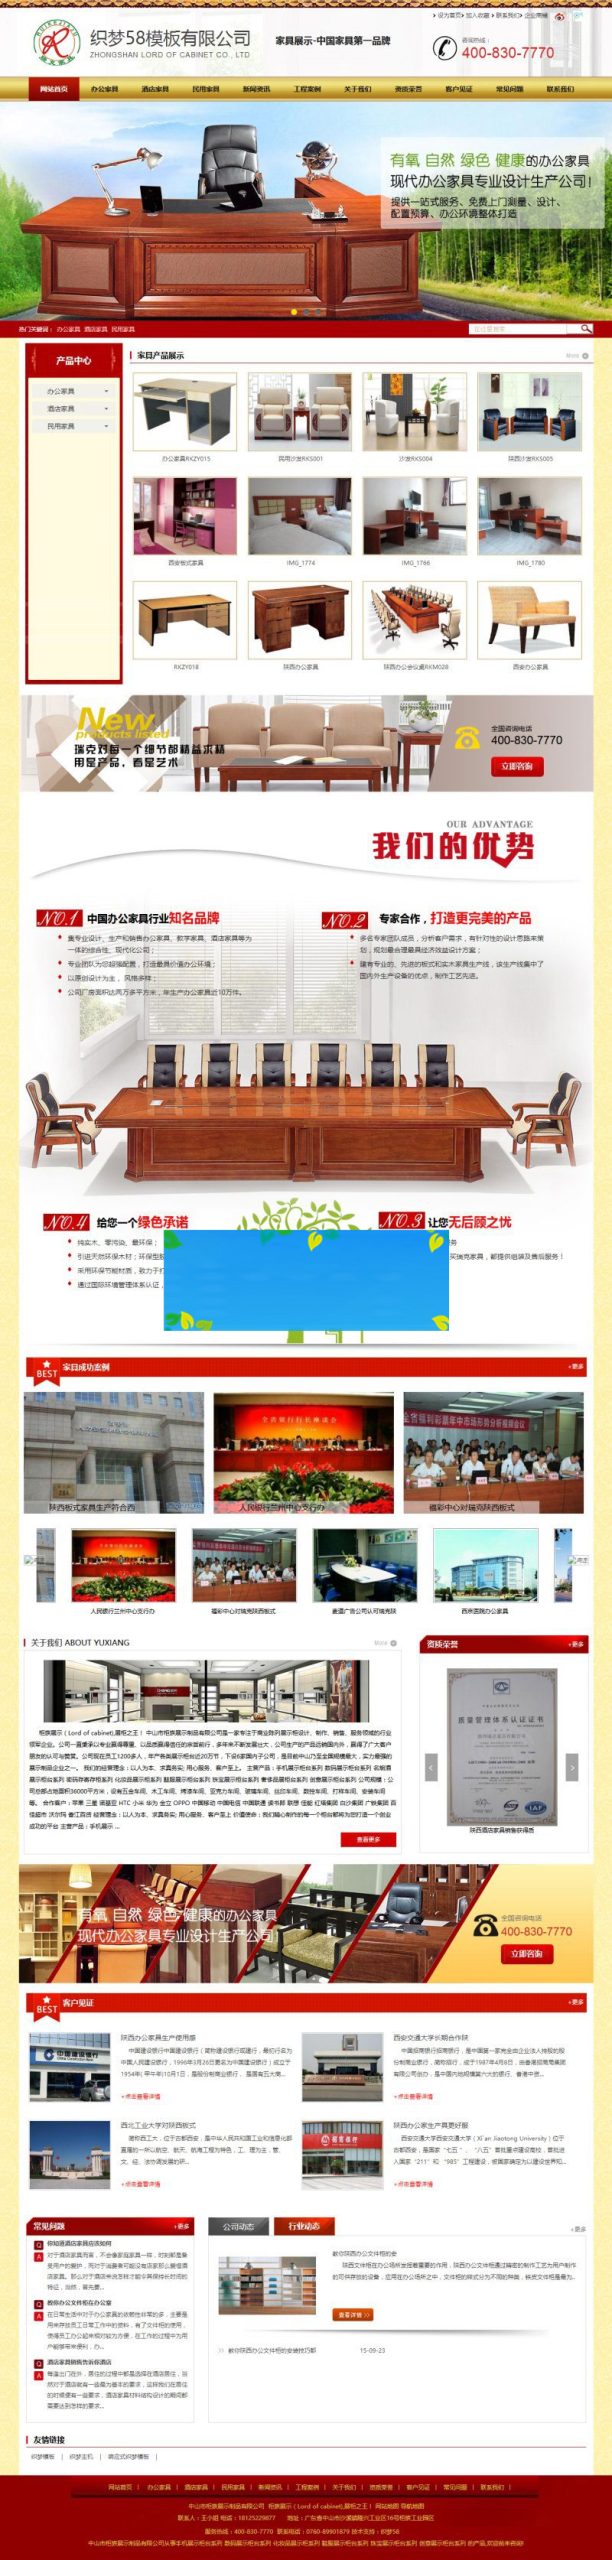 织梦dedecms营销型家具产物发卖企业网站模板-零度空间